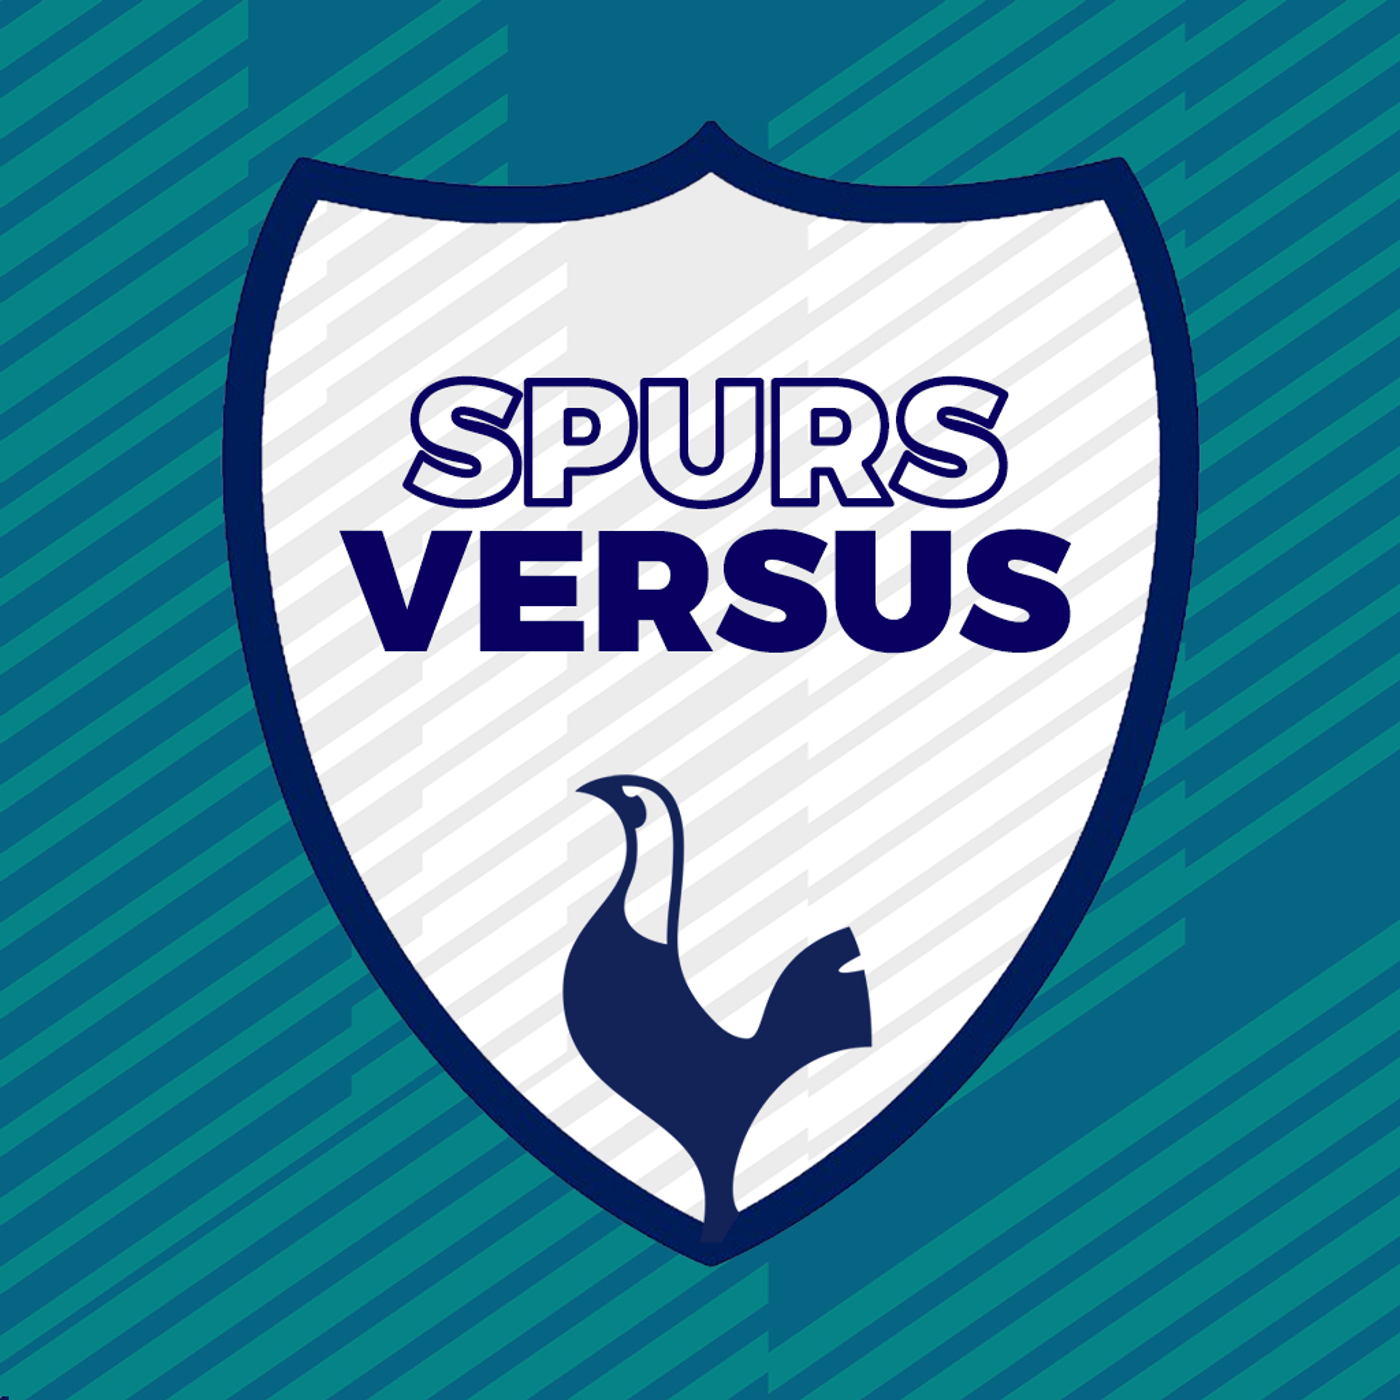 Spurs Versus